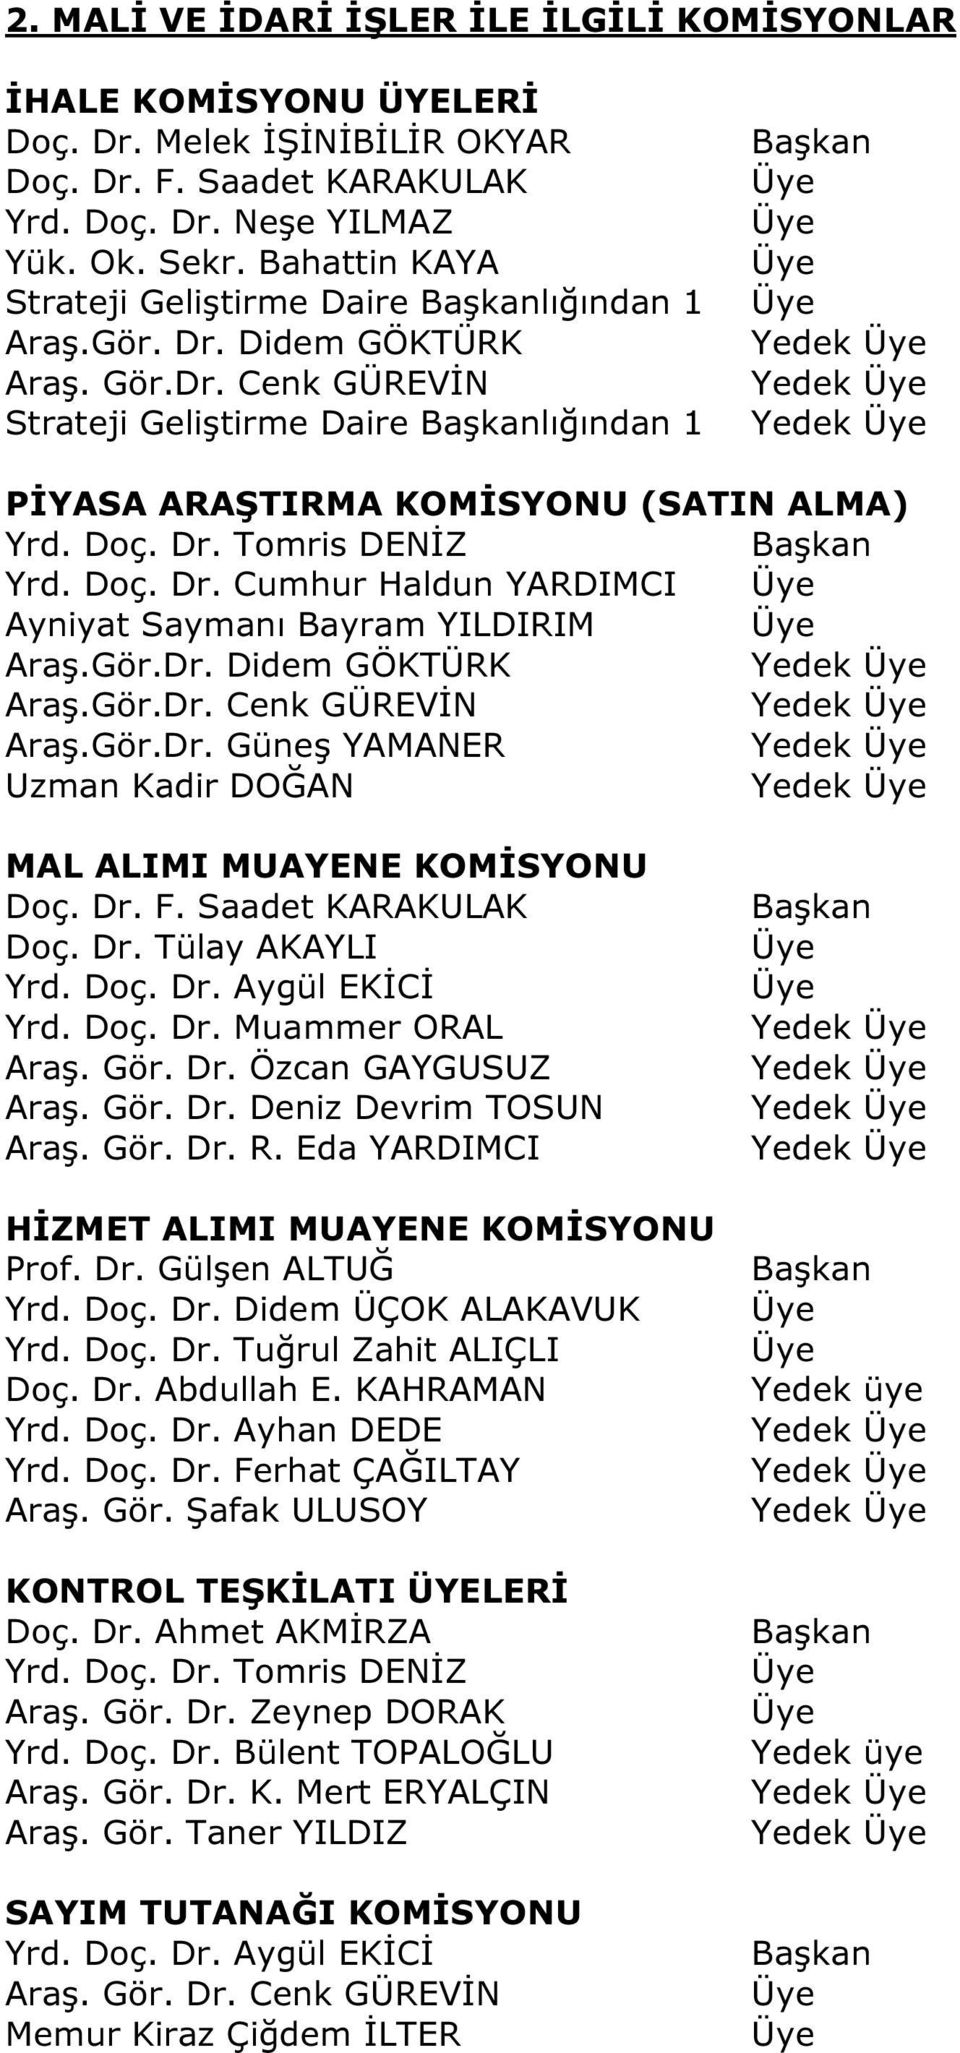 Doç. Dr. Muammer ORAL Araş. Gör. Dr. Özcan GAYGUSUZ Araş. Gör. Dr. Deniz Devrim TOSUN Araş. Gör. Dr. R. Eda YARDIMCI HİZMET ALIMI MUAYENE KOMİSYONU Prof. Dr. Gülşen ALTUĞ Doç. Dr. Abdullah E.